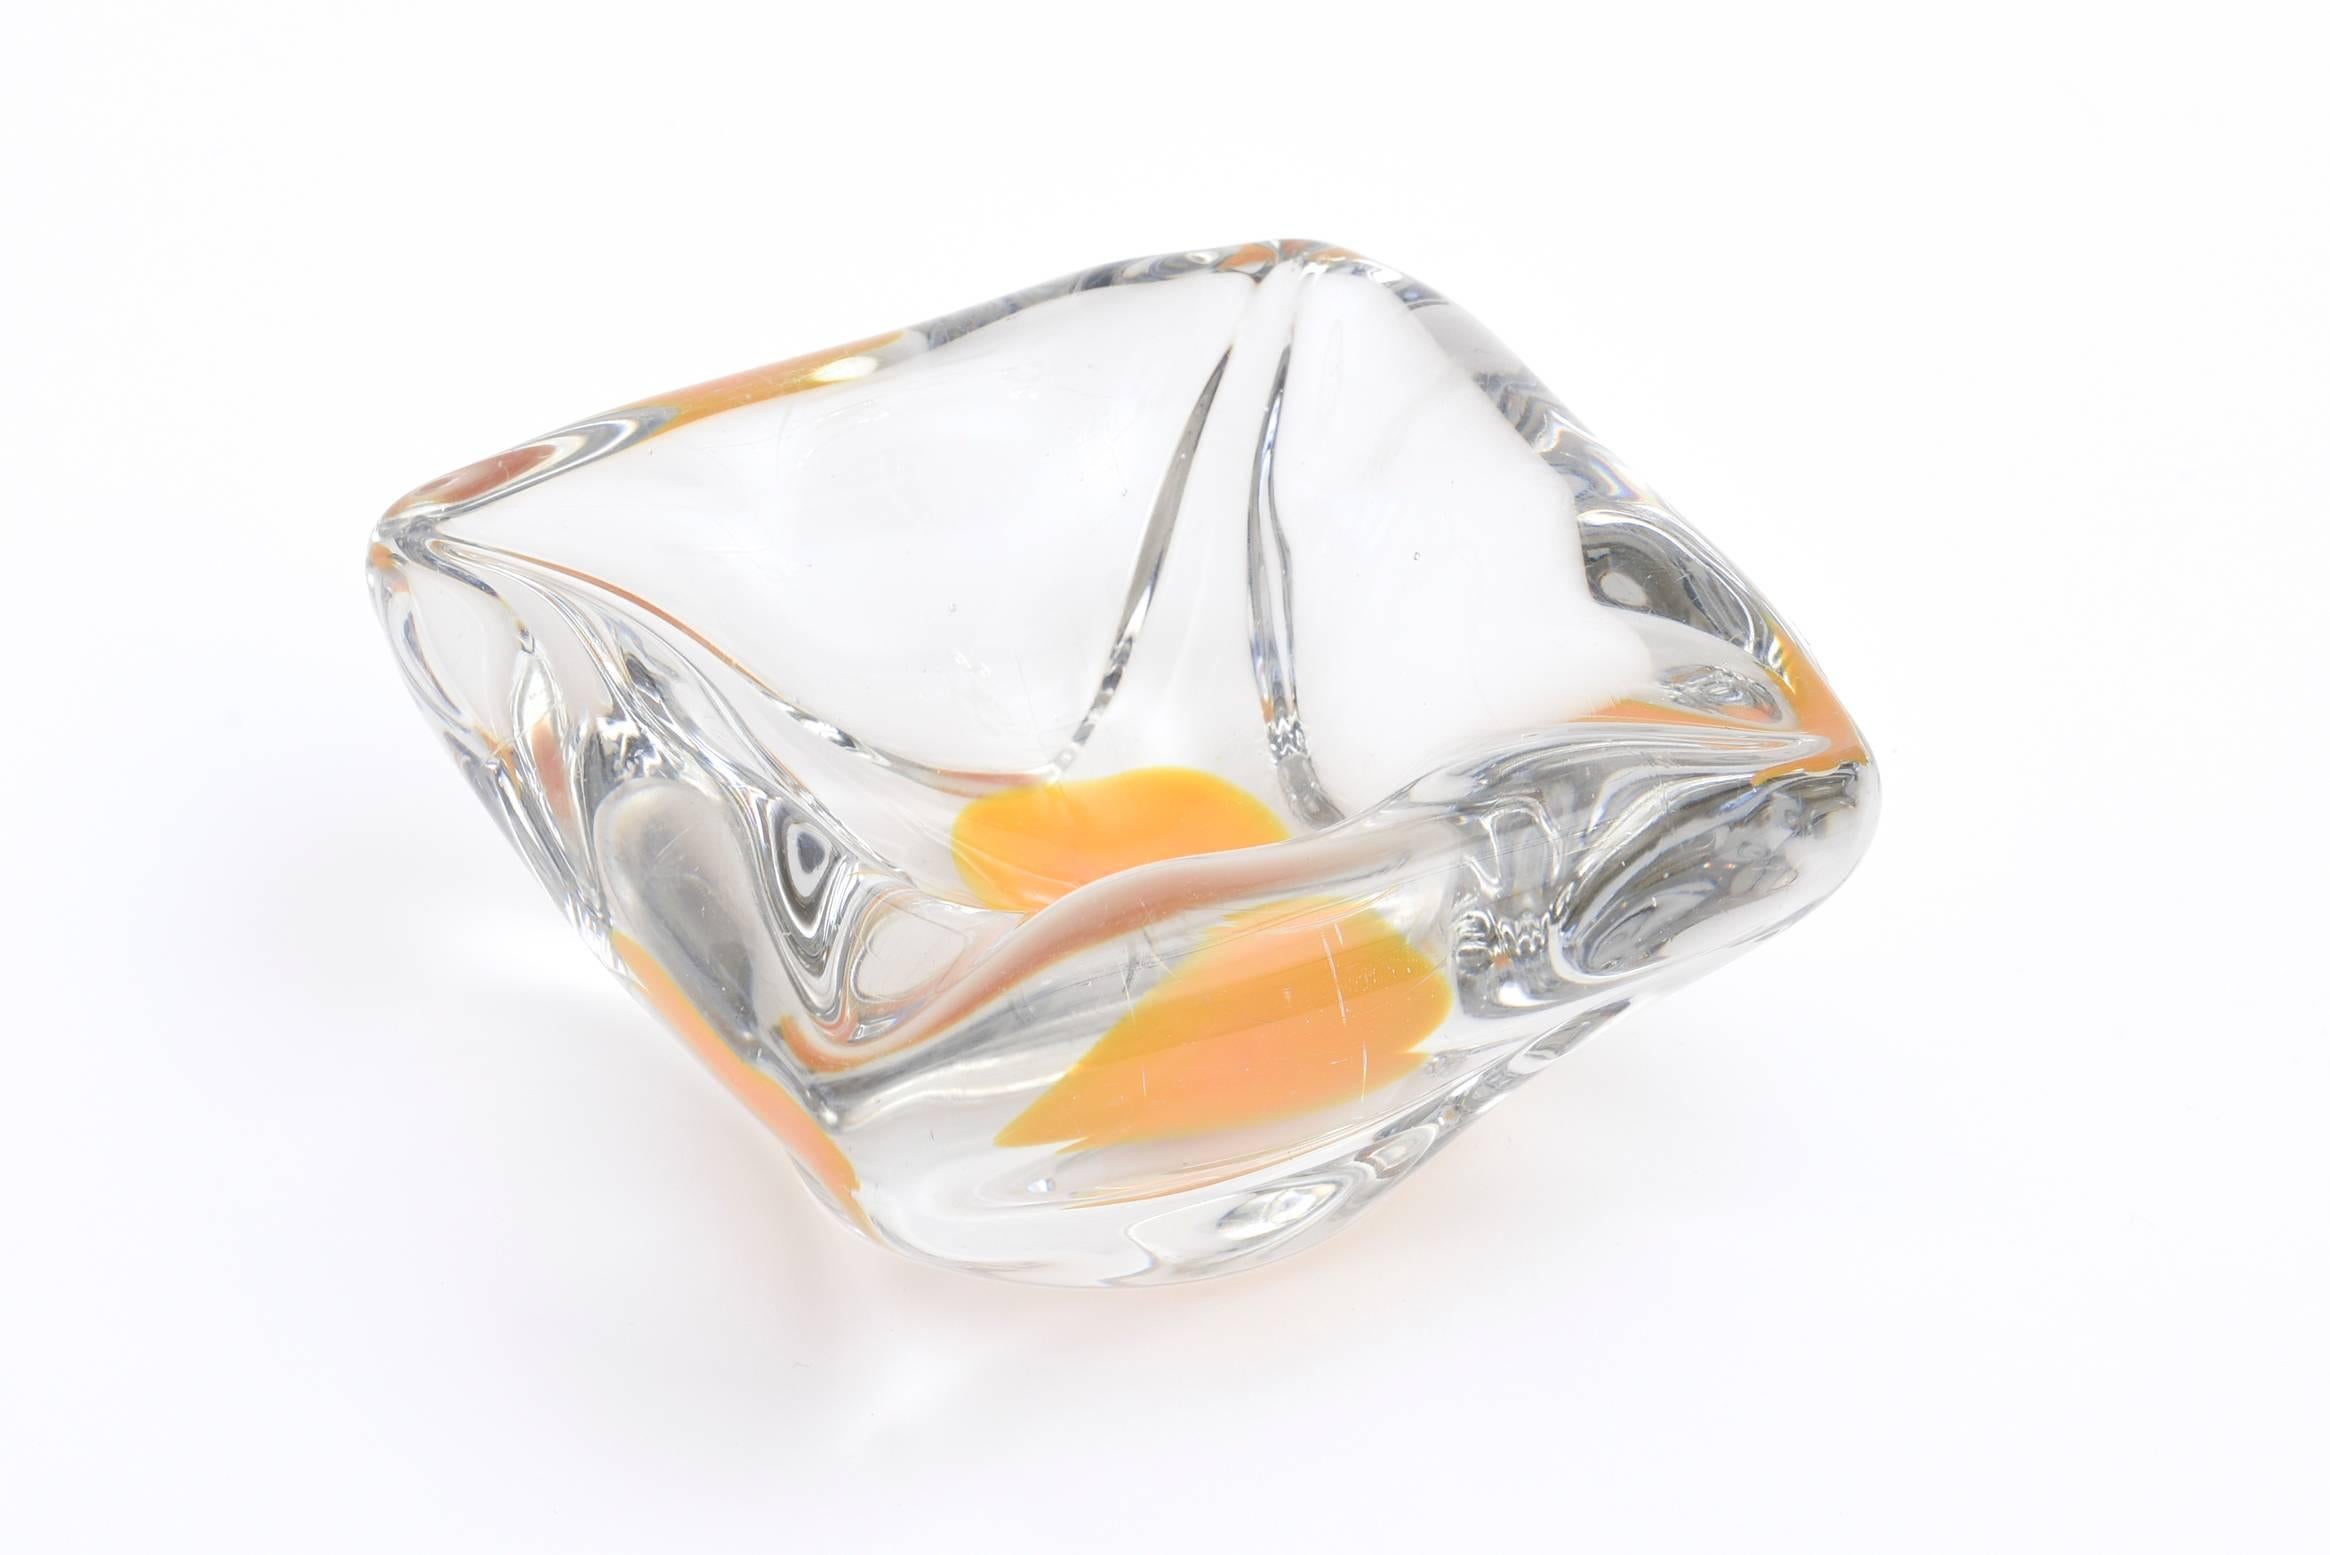 Diese dickwandige und schwere mundgeblasene schwedische Vintage-Glasschale heißt Coquille Flygsfors. Es ist, als wäre ein Eigelb in die Mitte getropft worden. Diese kann sowohl zum Servieren als auch als dekorative Schale verwendet werden. Es stammt